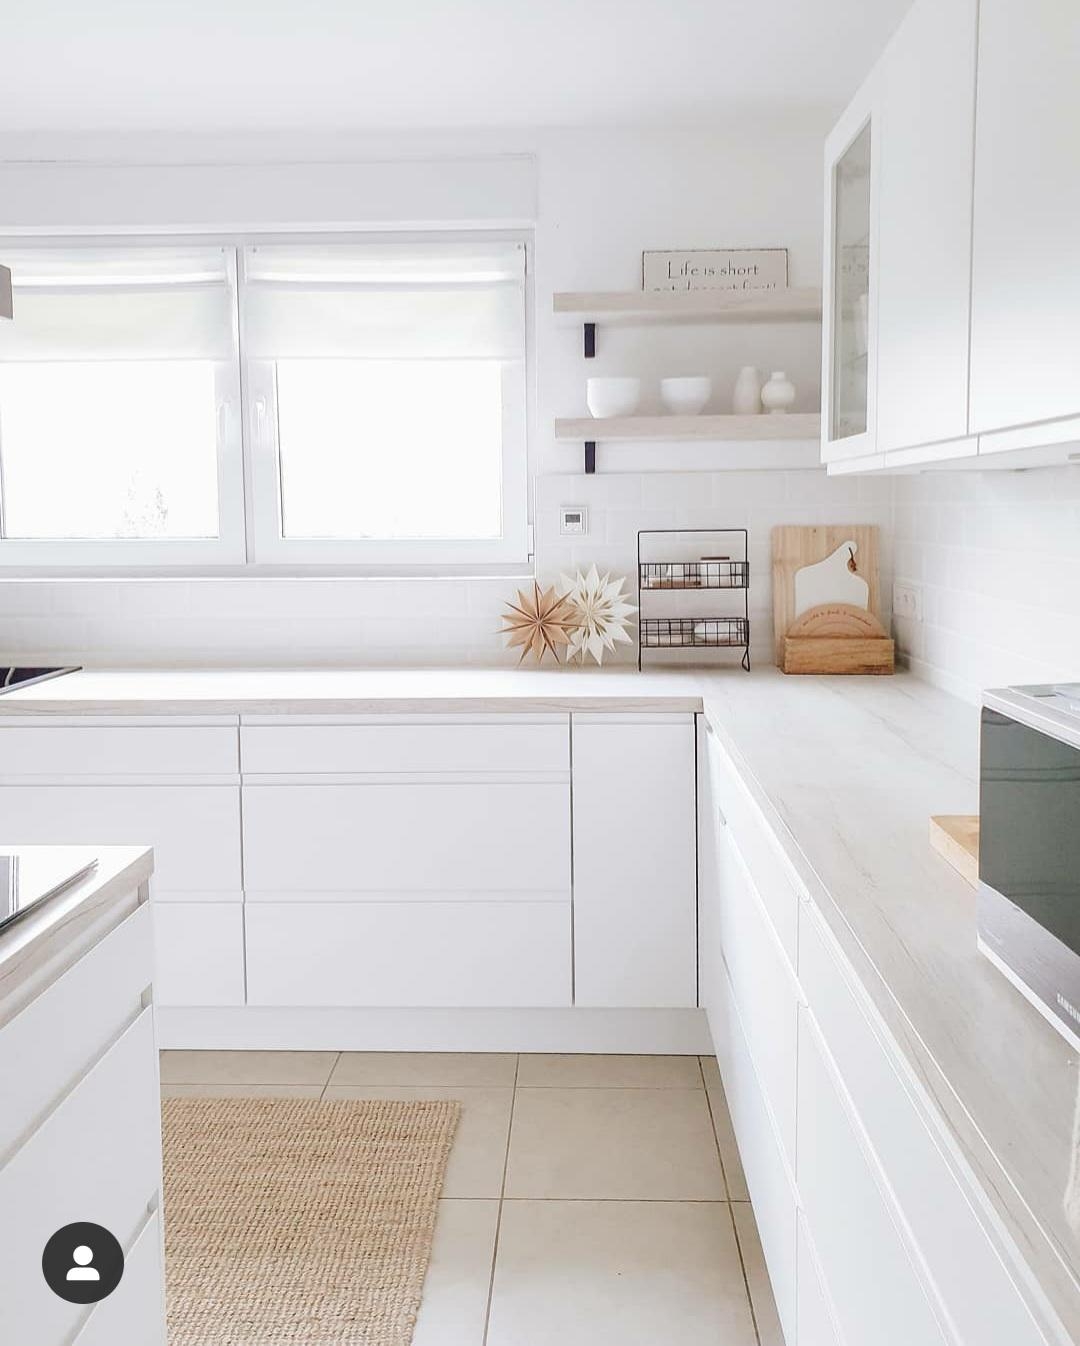 Unsere Küche ist mein Lieblingsraum im Haus 🤍
#kitchendesign #mykitchen #küchenliebe #metrofliesen #Küche 